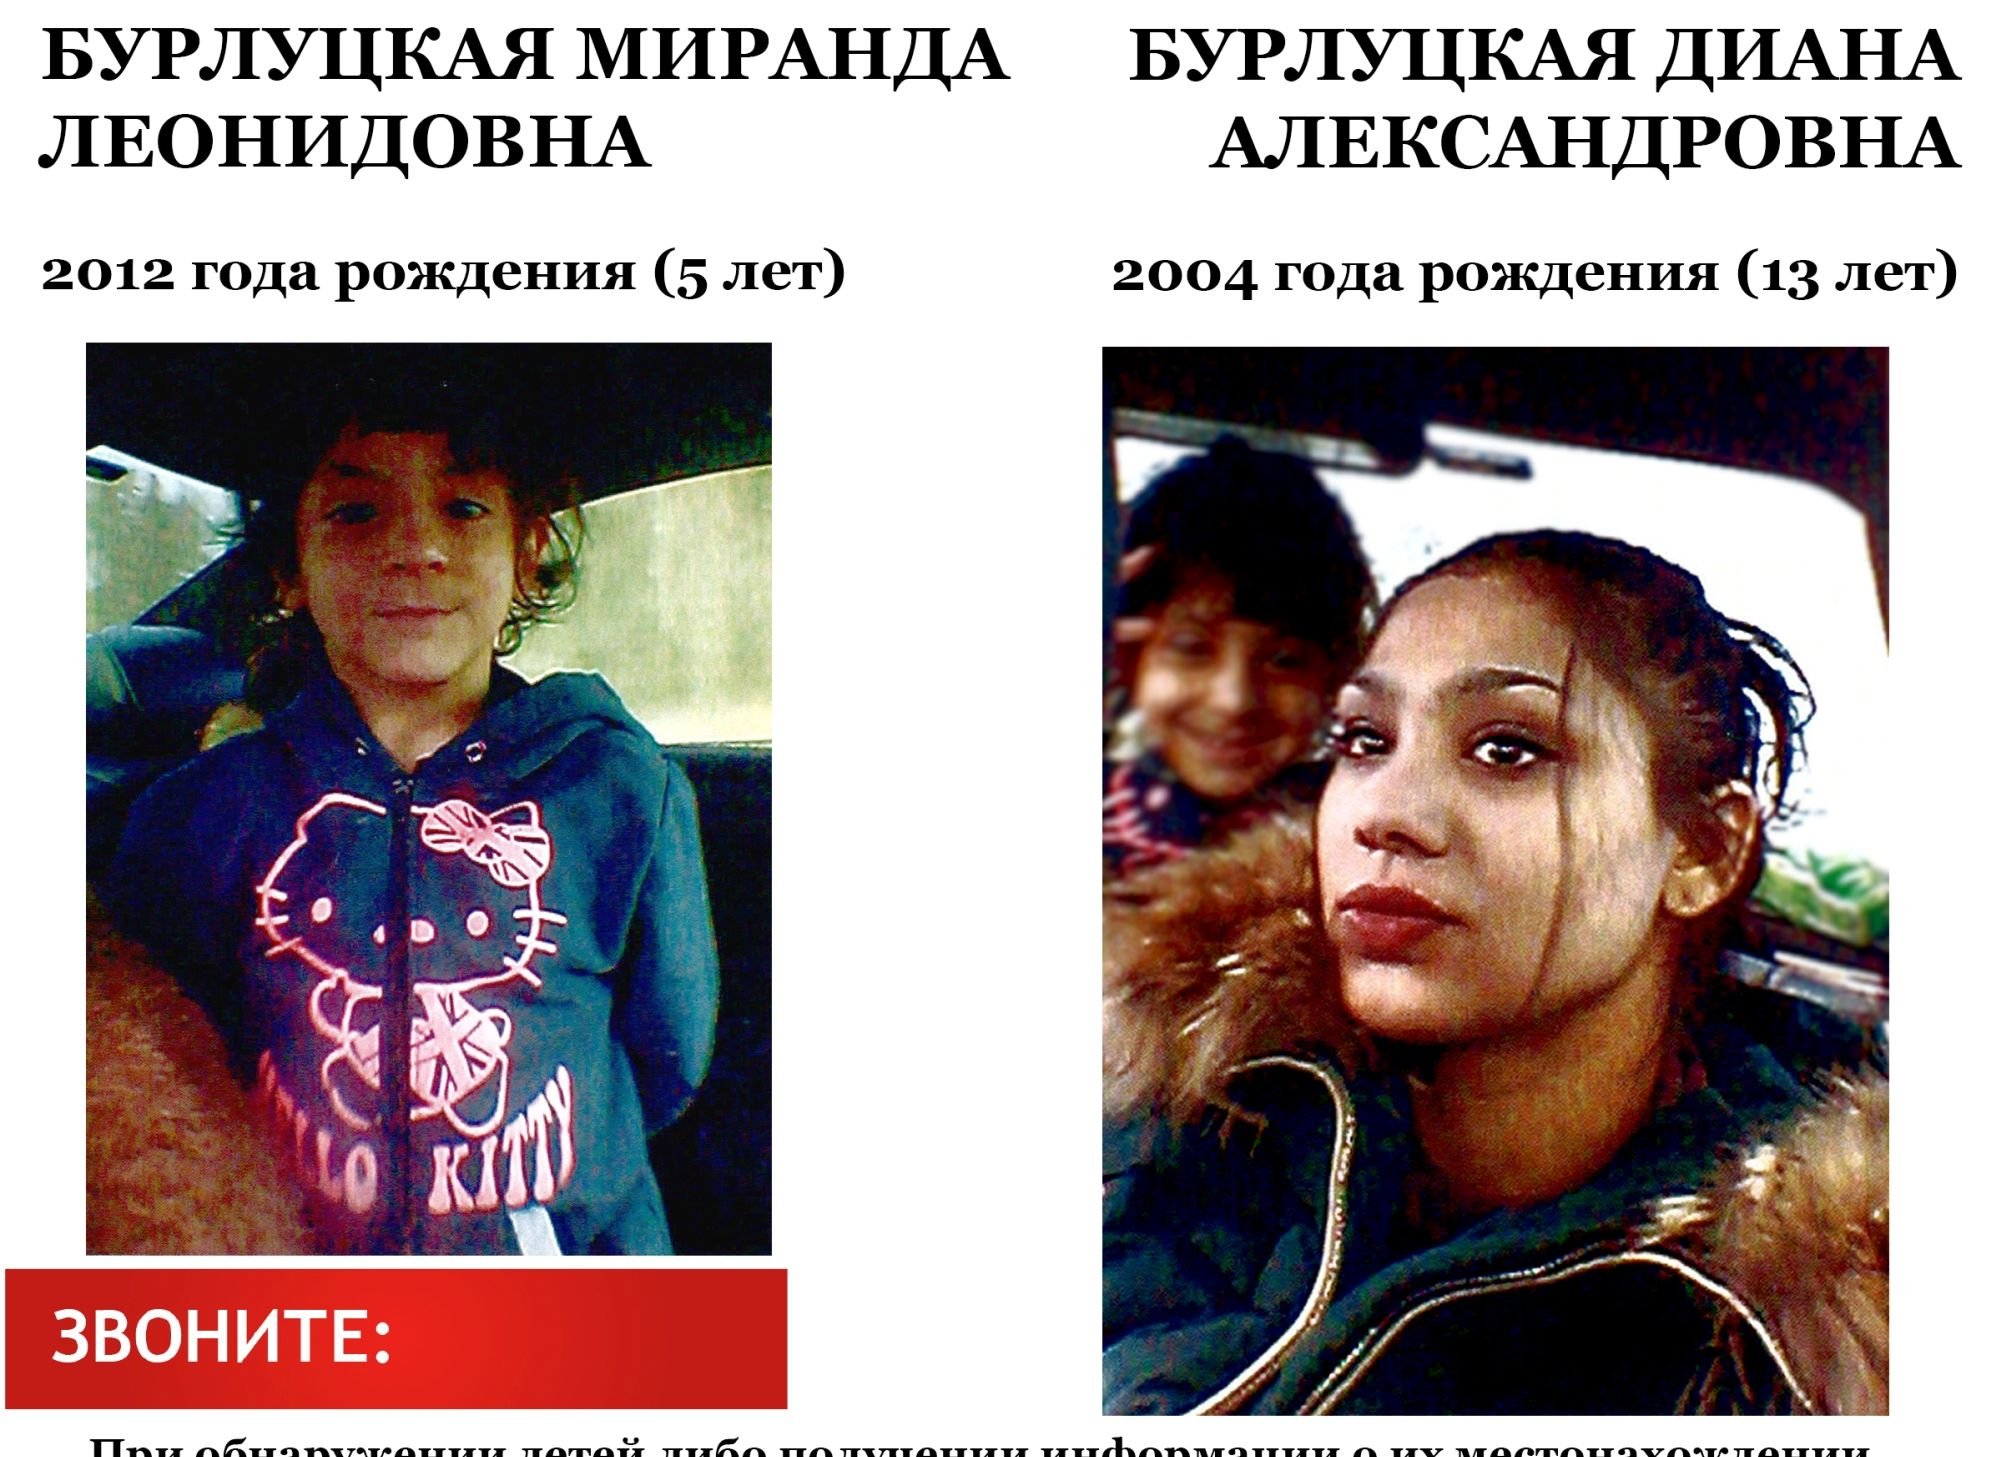 В Рязанской области разыскивают двух пропавших девочек